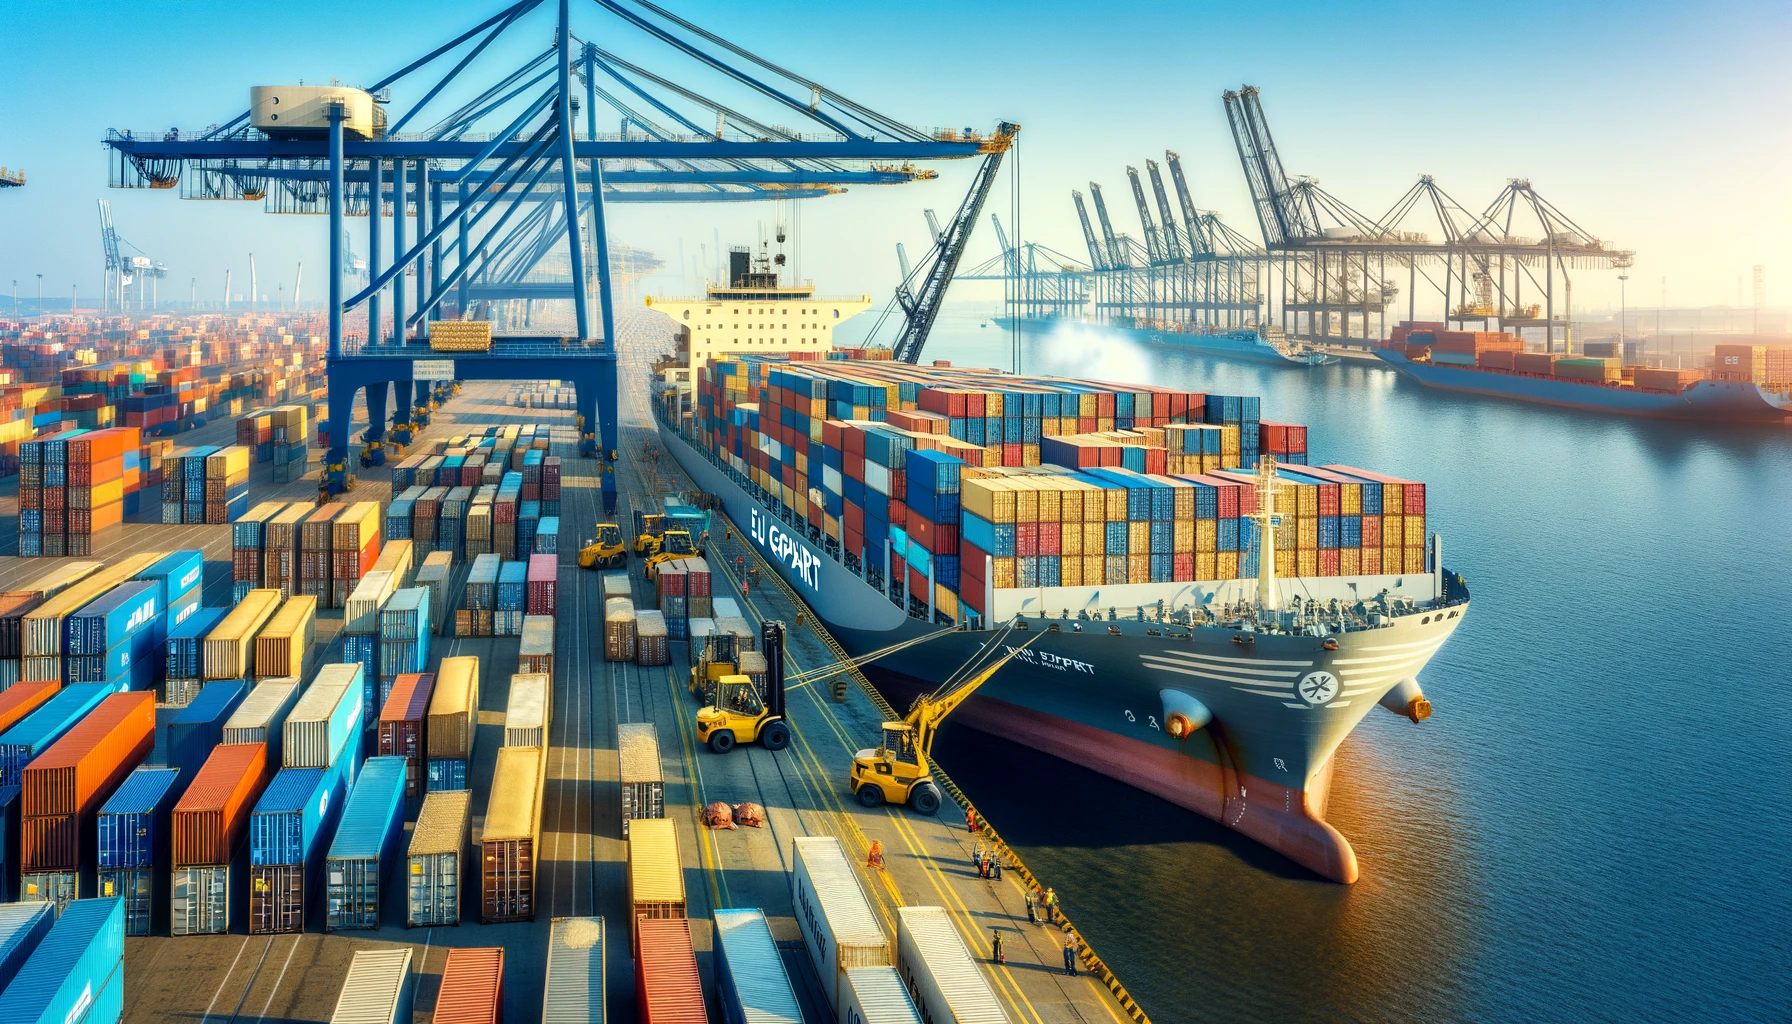 Containerfrachtschiff im Hafen, symbolisiert globale Agrarmärkte und Handelsdynamik.